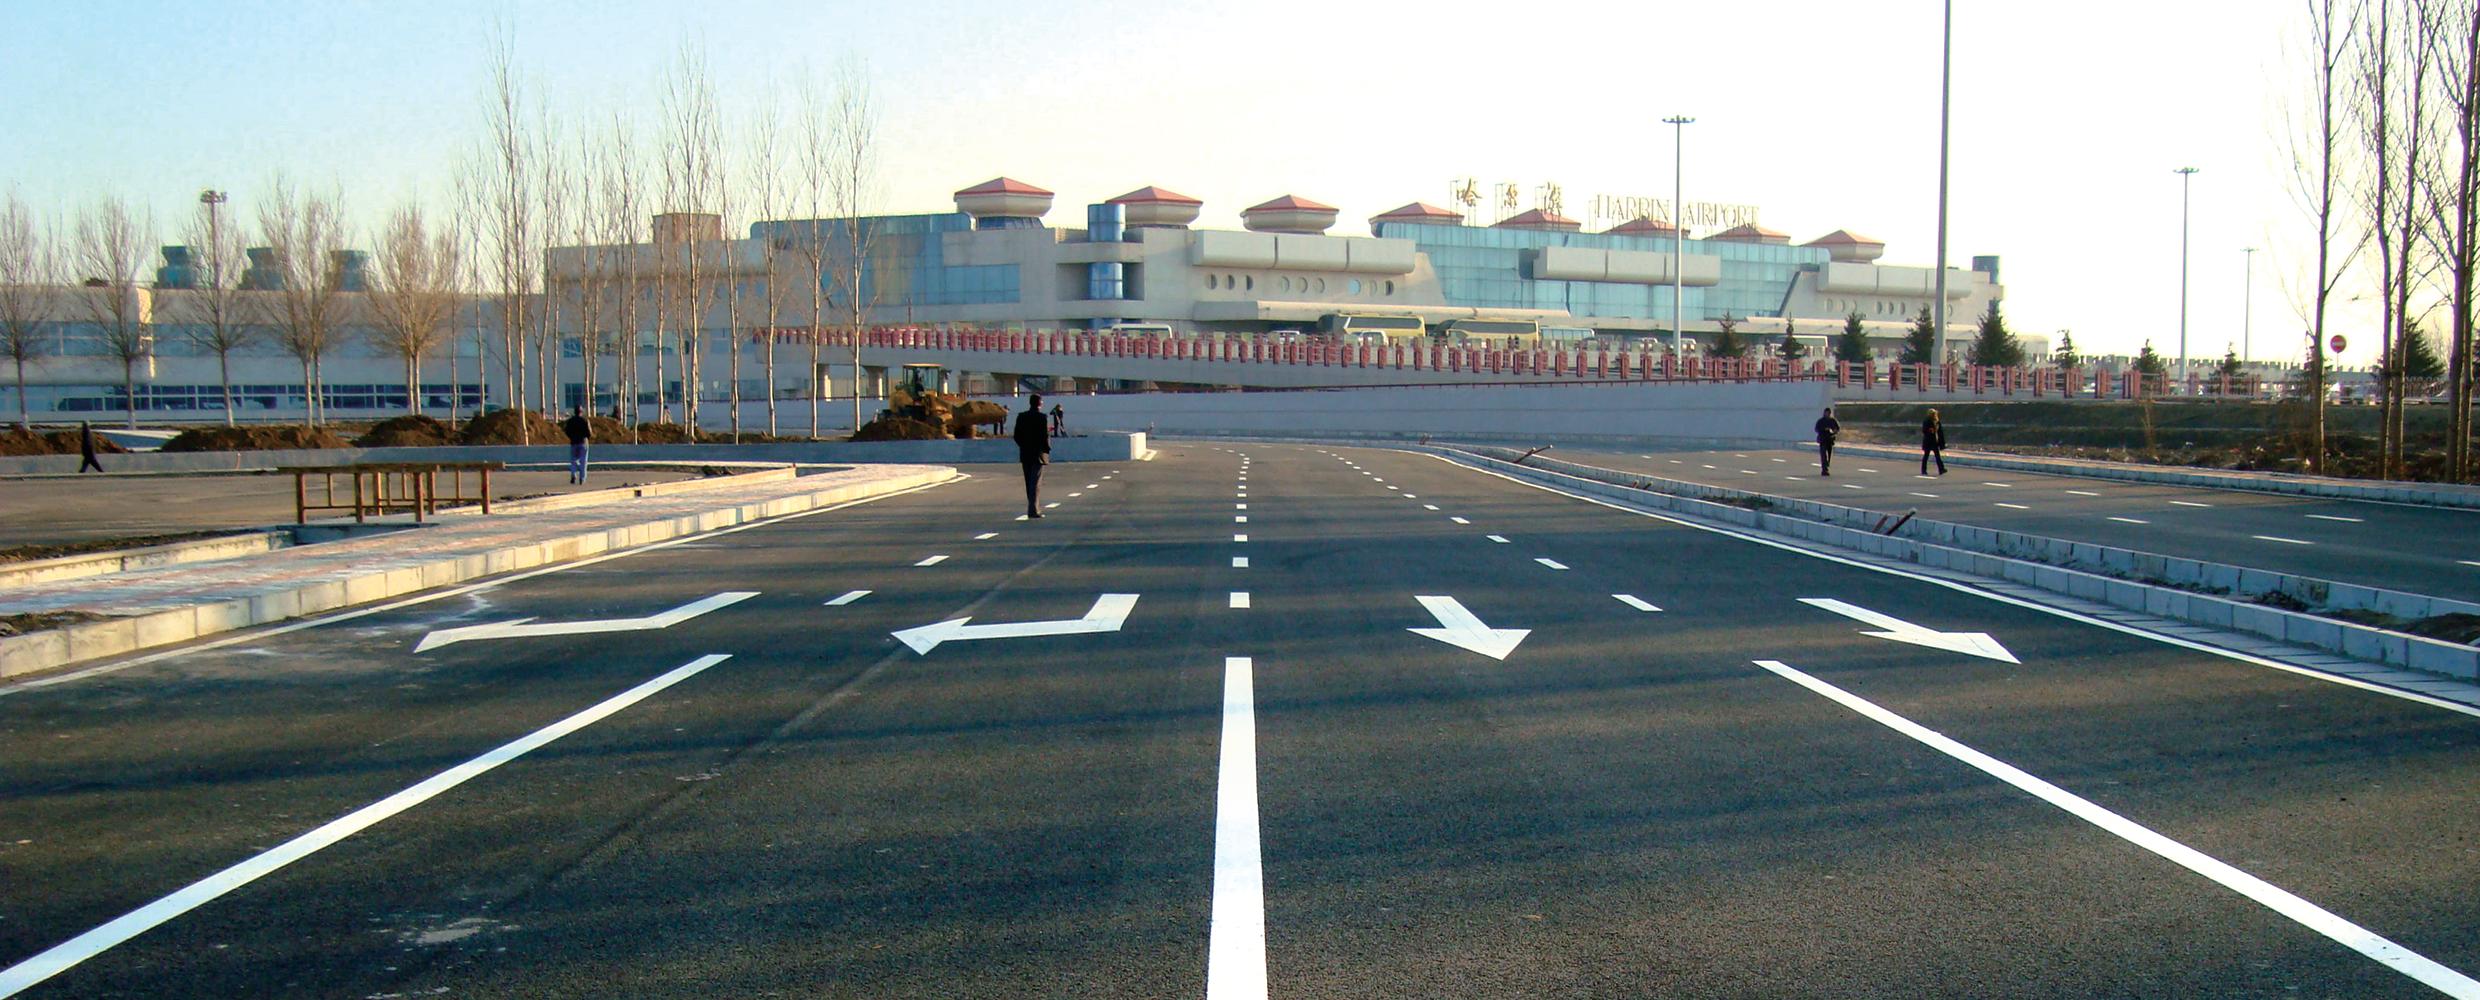 太平国际机场停车场道路工程